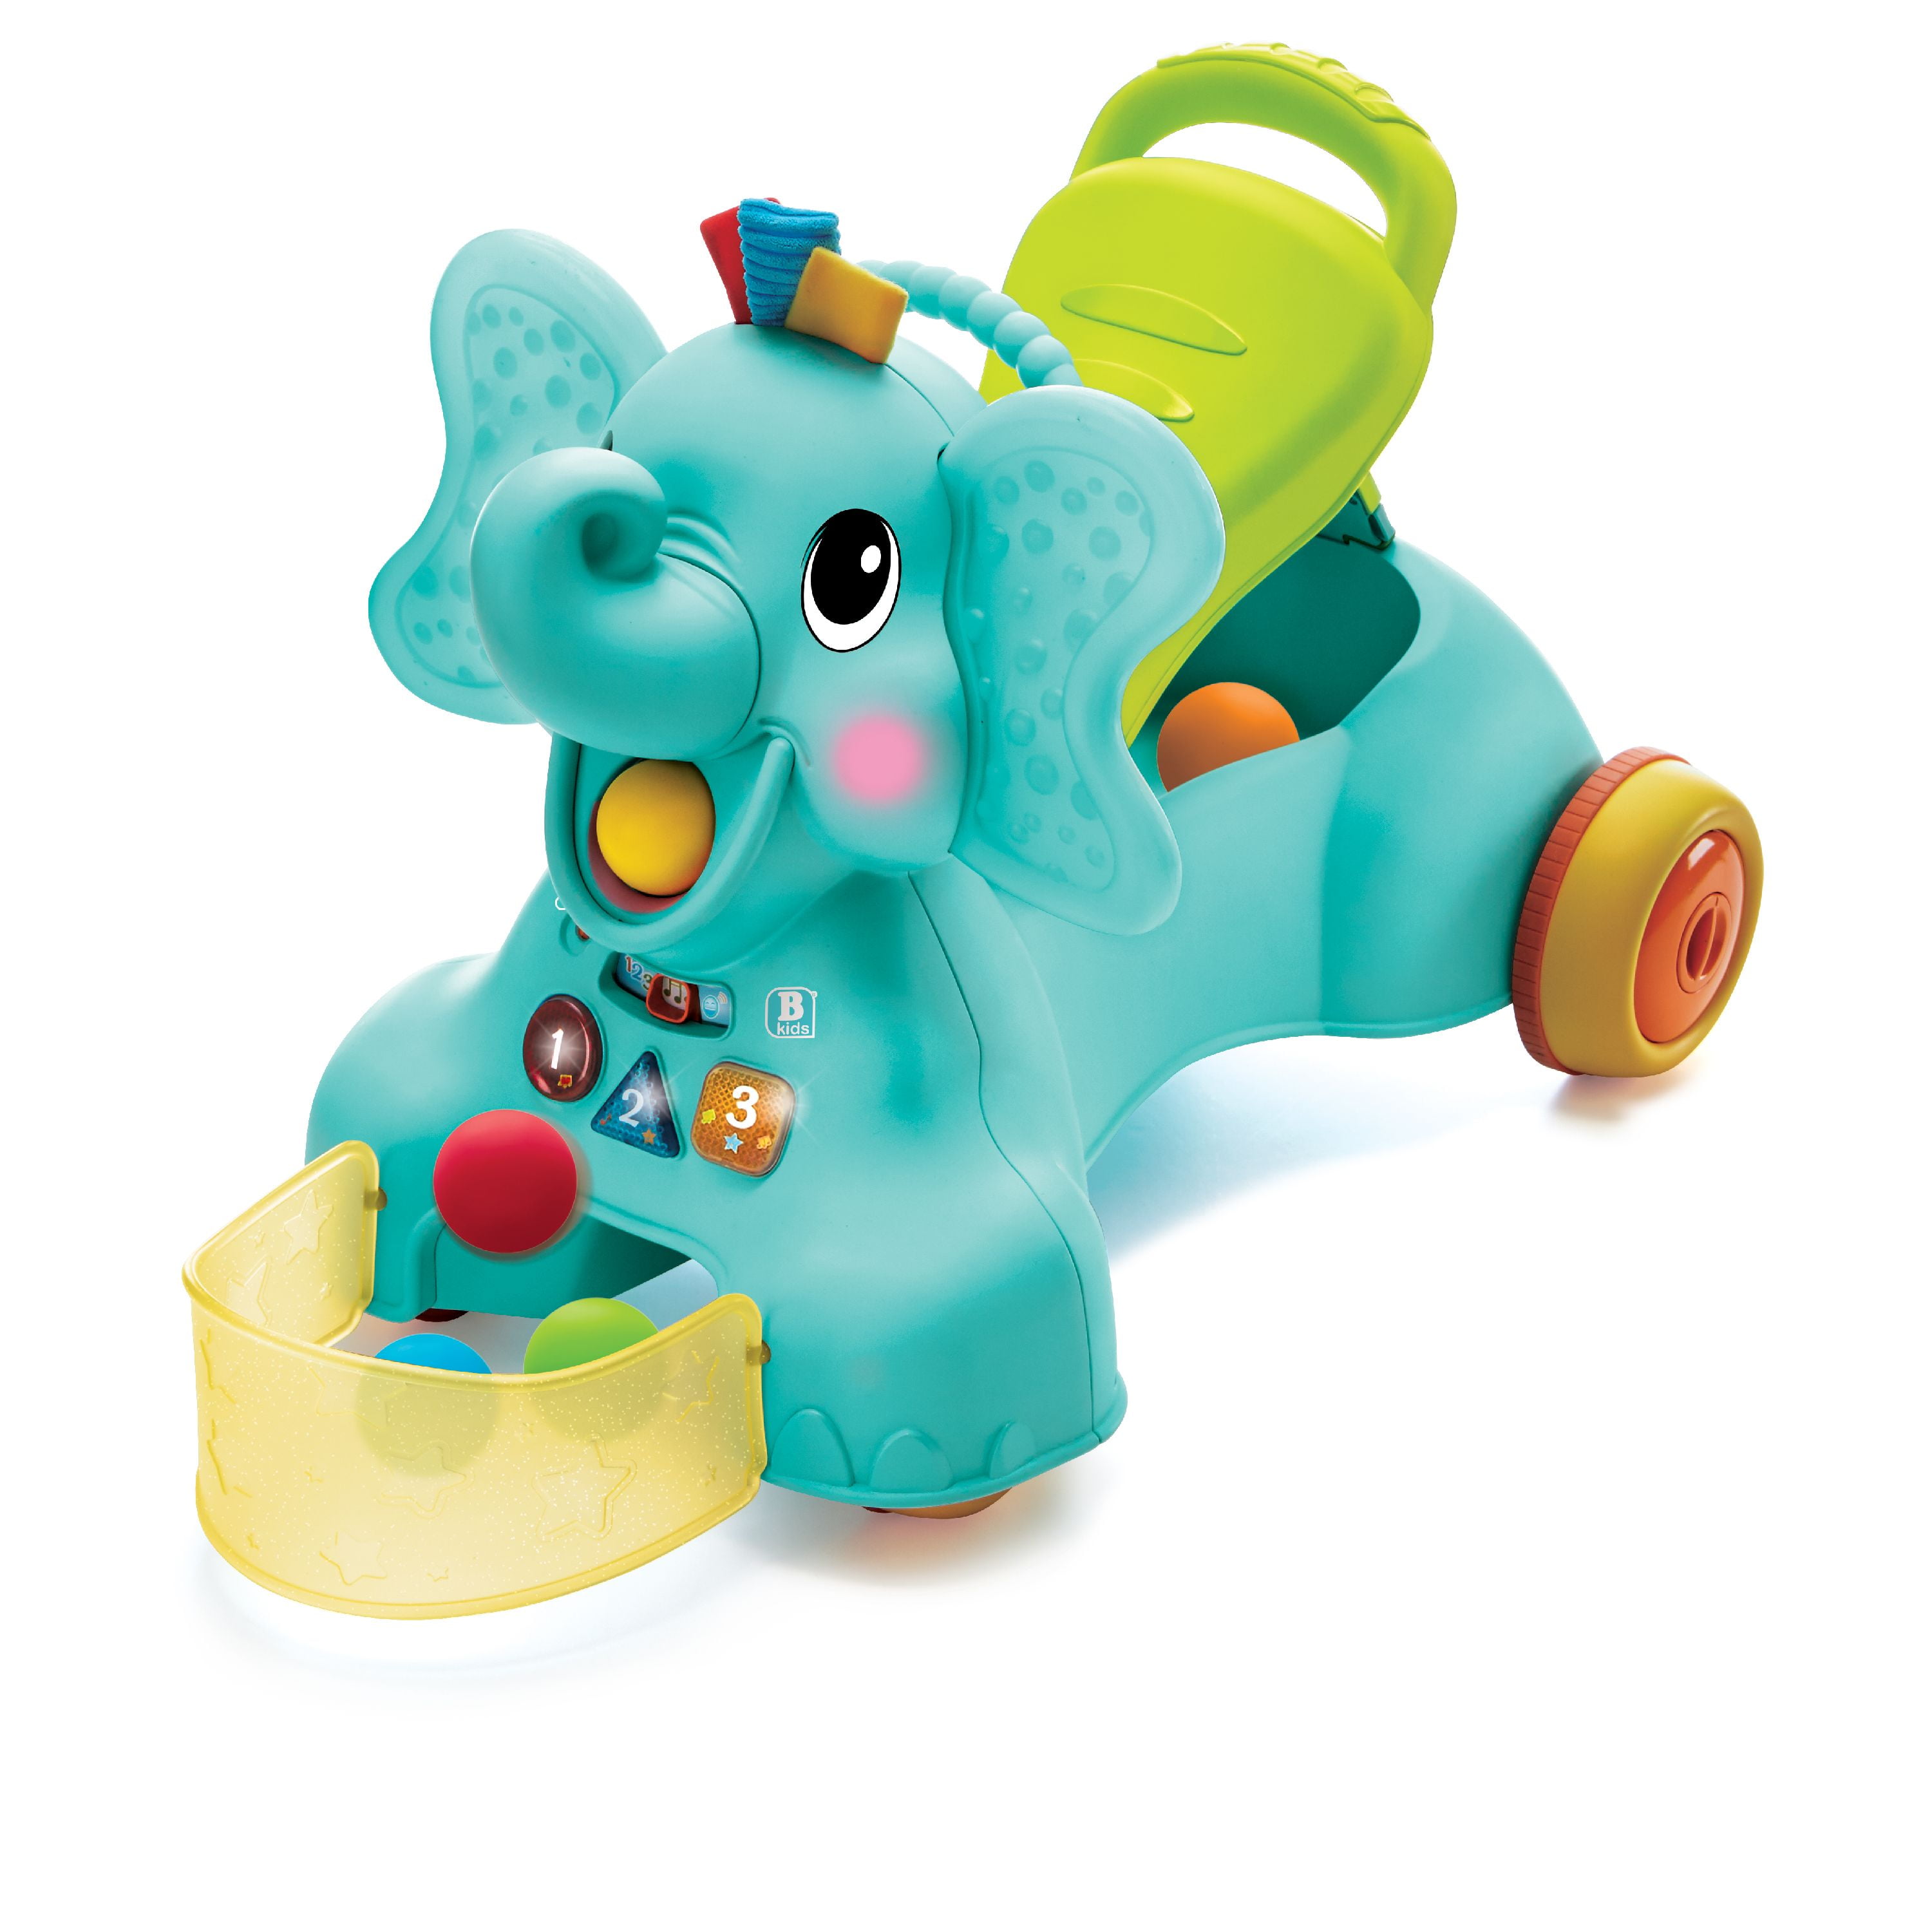 elephant walker toy